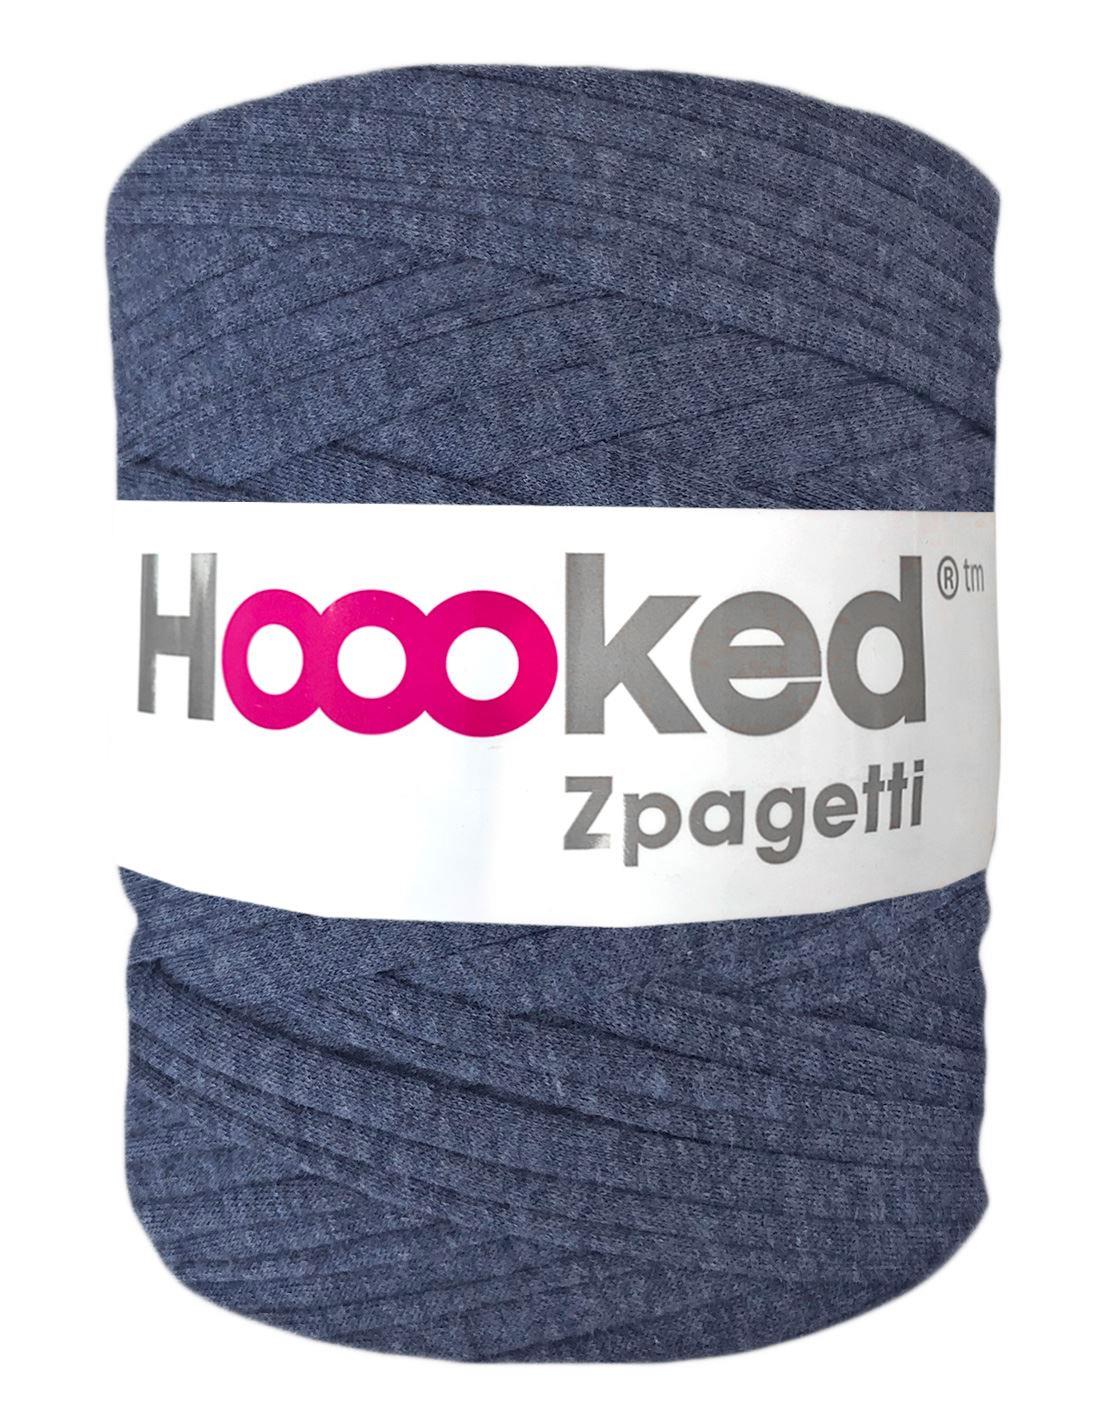 Mottled denim blue t-shirt yarn by Hoooked Zpagetti (100-120m)